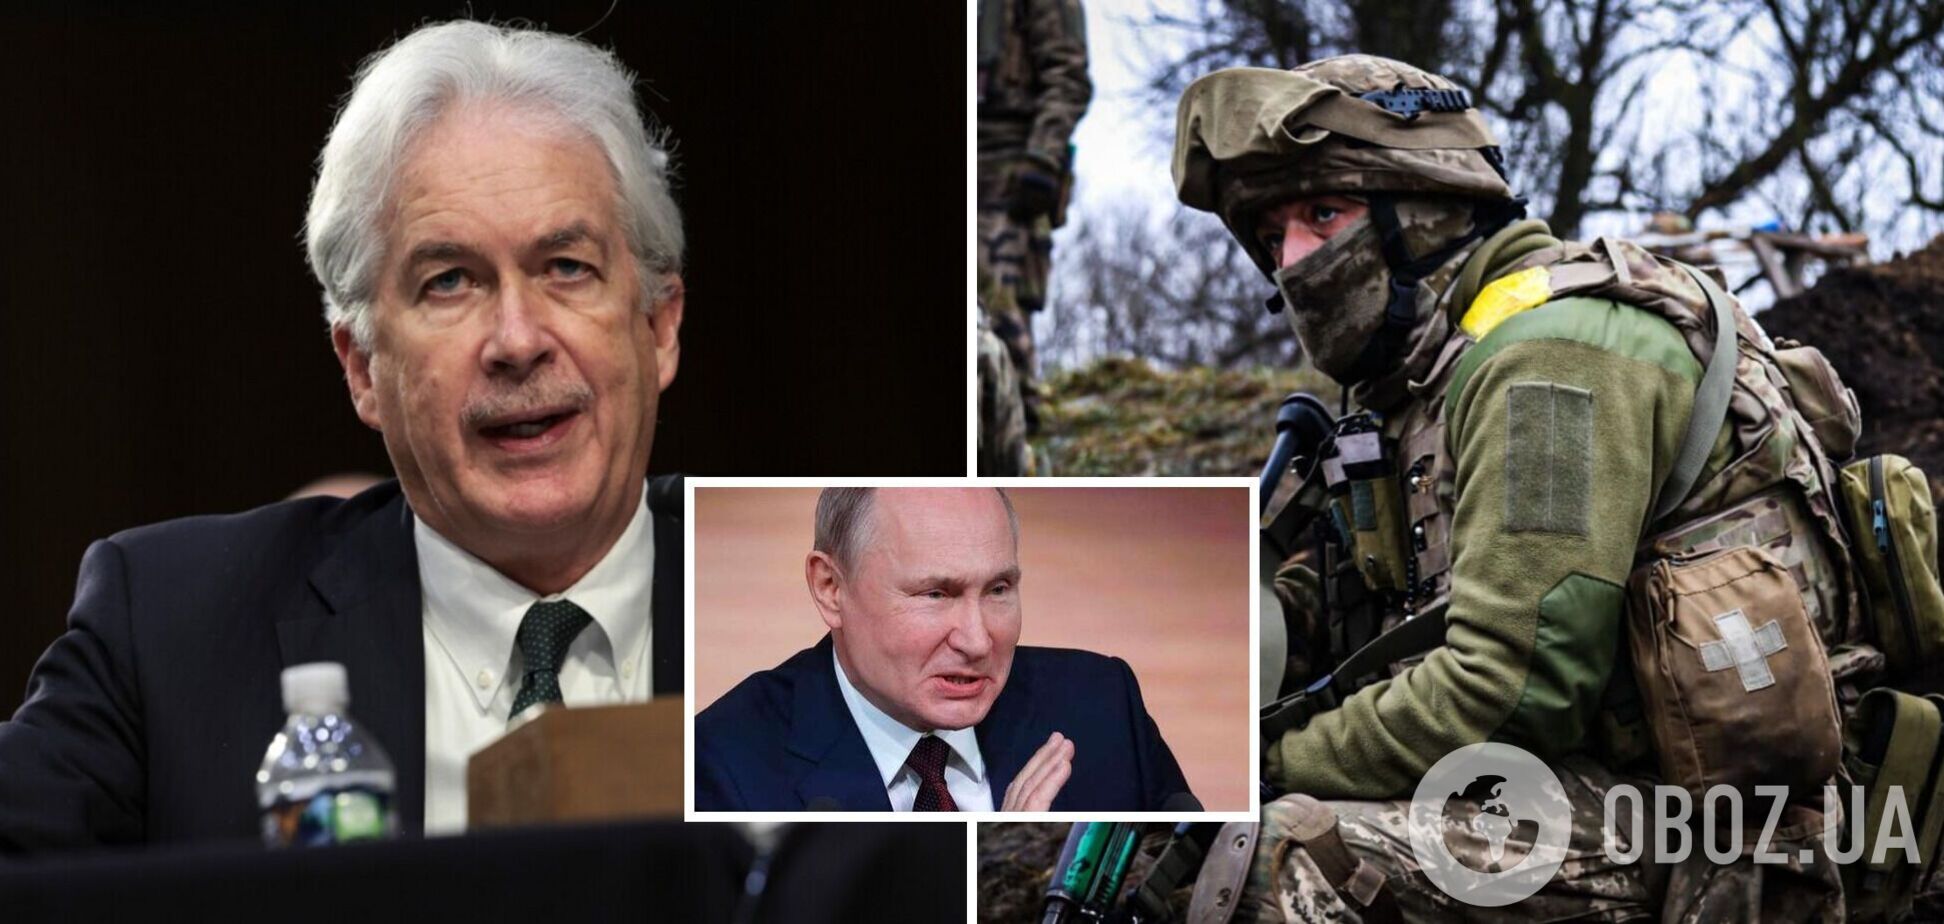 Следующие полгода войны в Украине будут критическими, Россия не настроена на переговоры, – директор ЦРУ Бернс